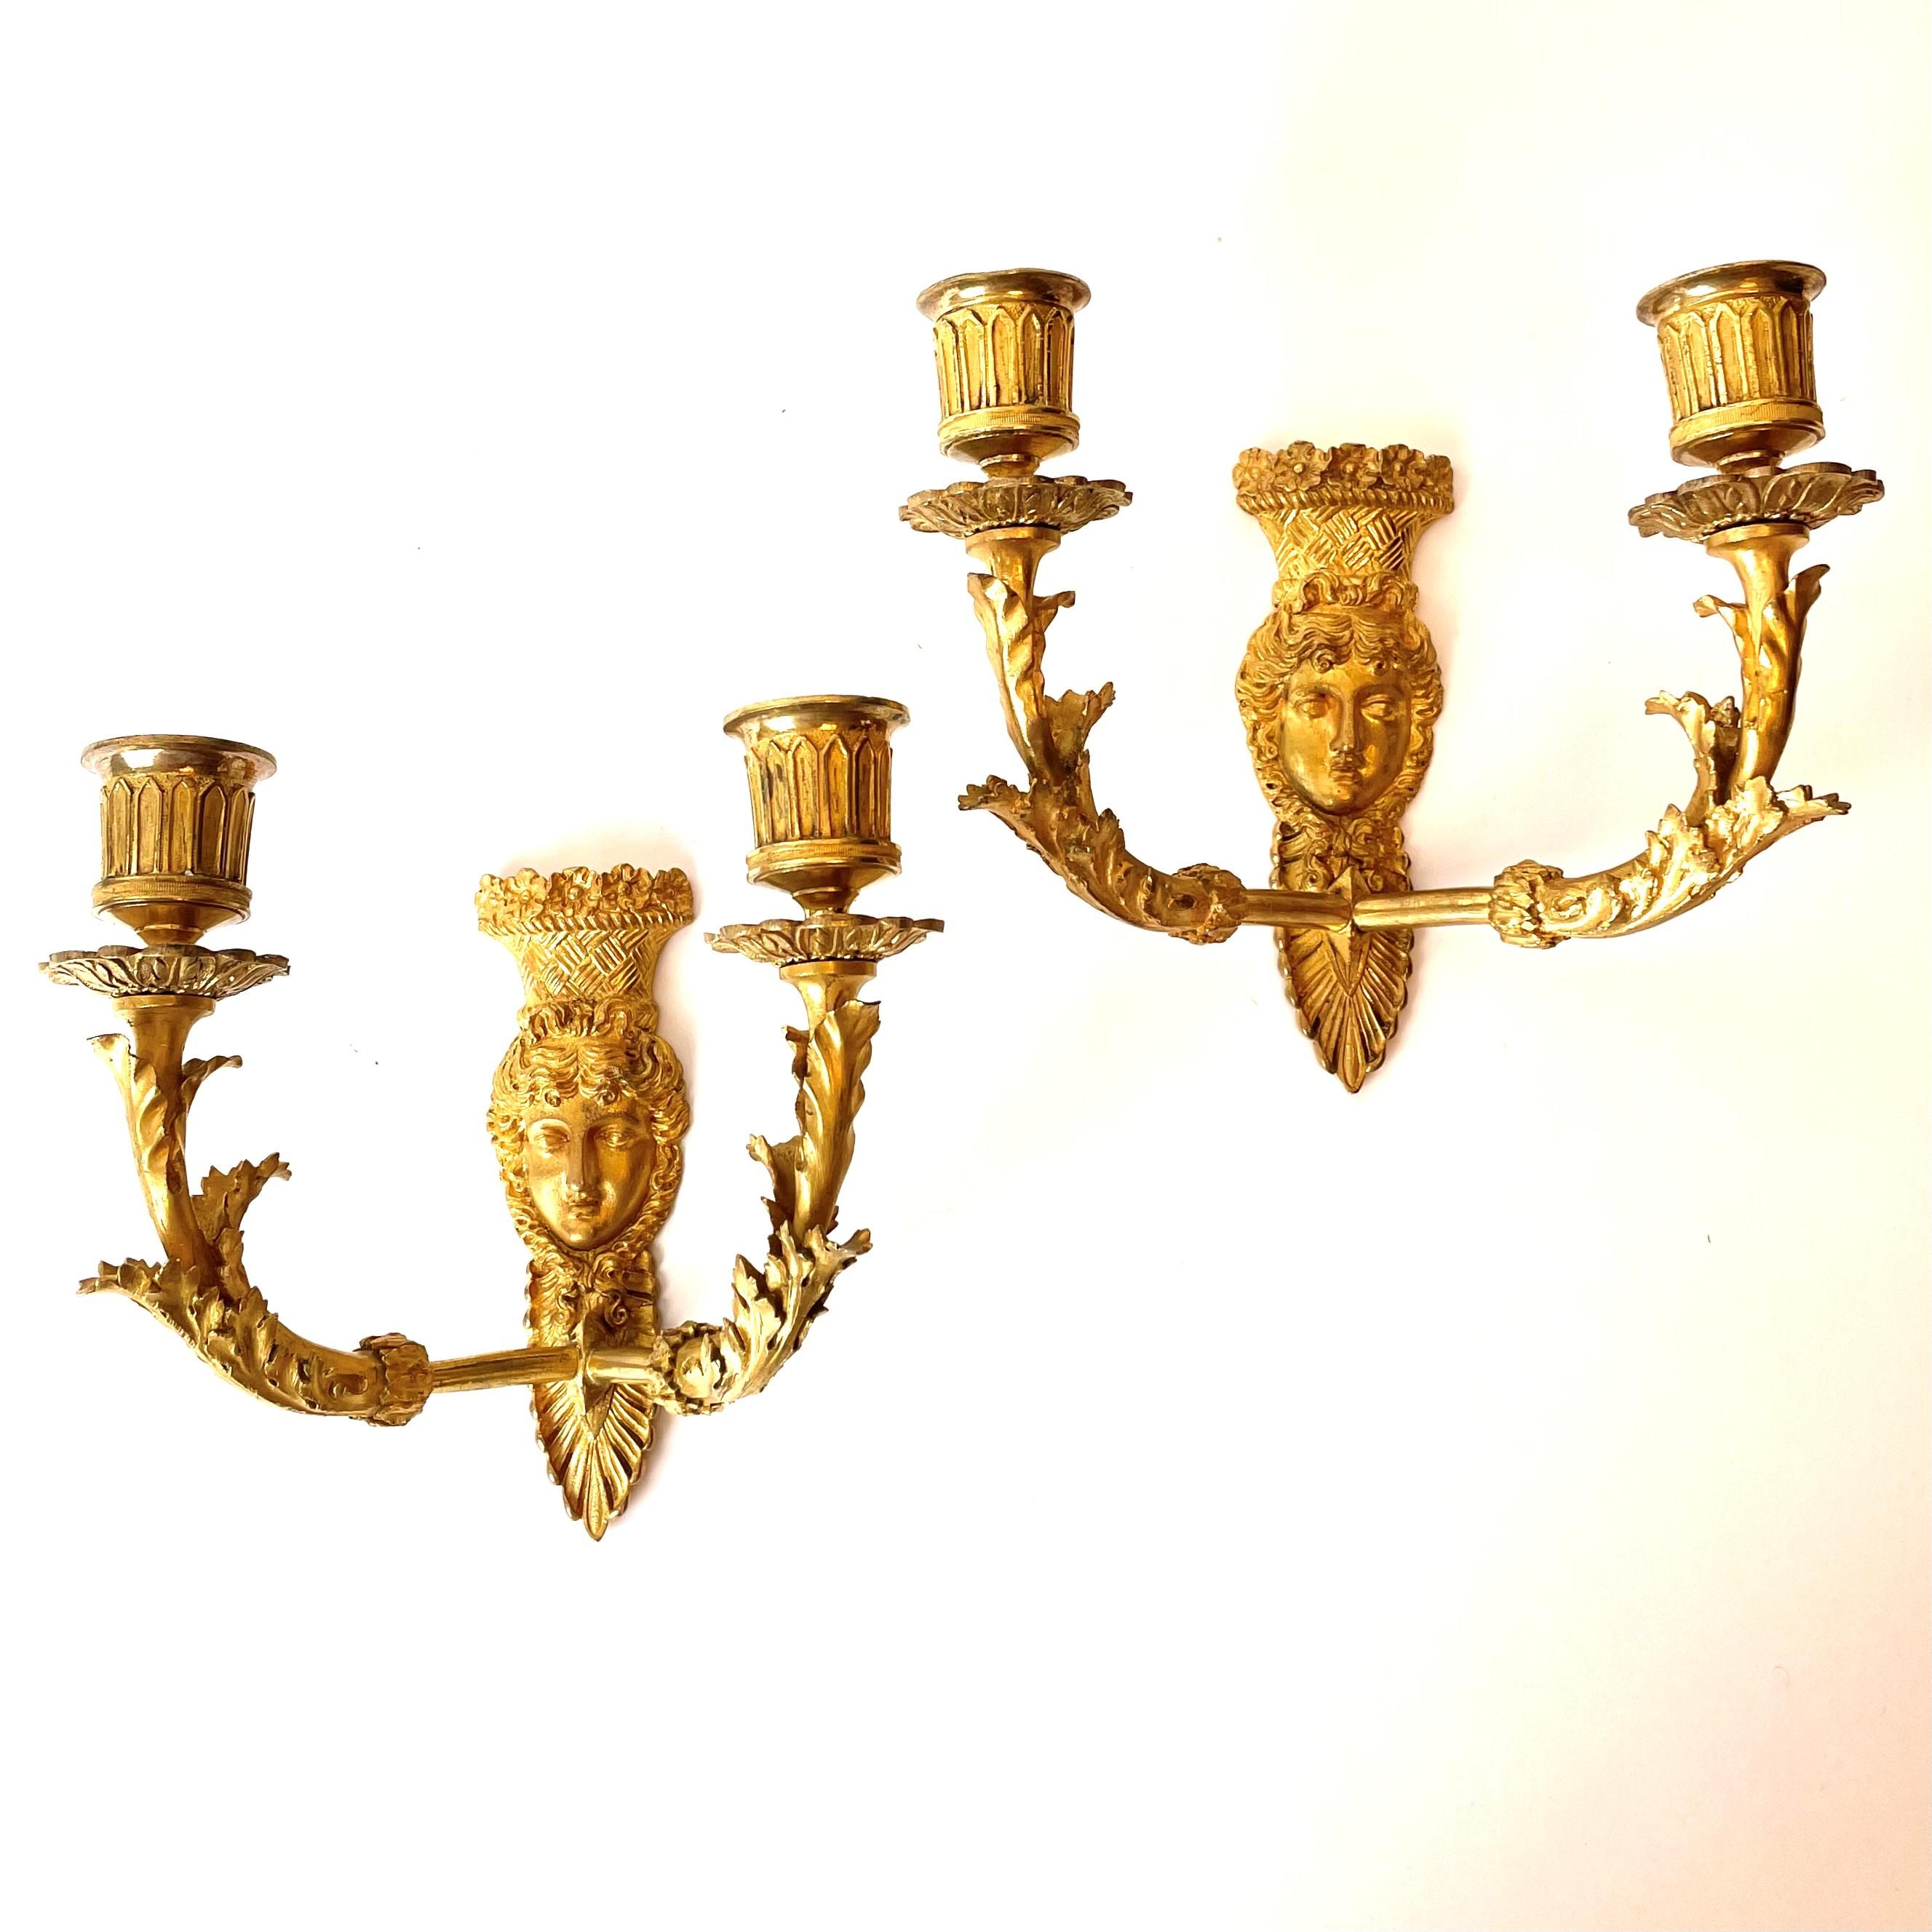 Ein schönes und seltenes Paar vergoldeter Empire-Appliken aus Bronze. Hergestellt in Frankreich in den 1820er Jahren. Die Vergoldung weist einige Abnutzungserscheinungen auf, hat aber auch eine schöne Patina. Siehe Bilder.

Abnutzung entsprechend